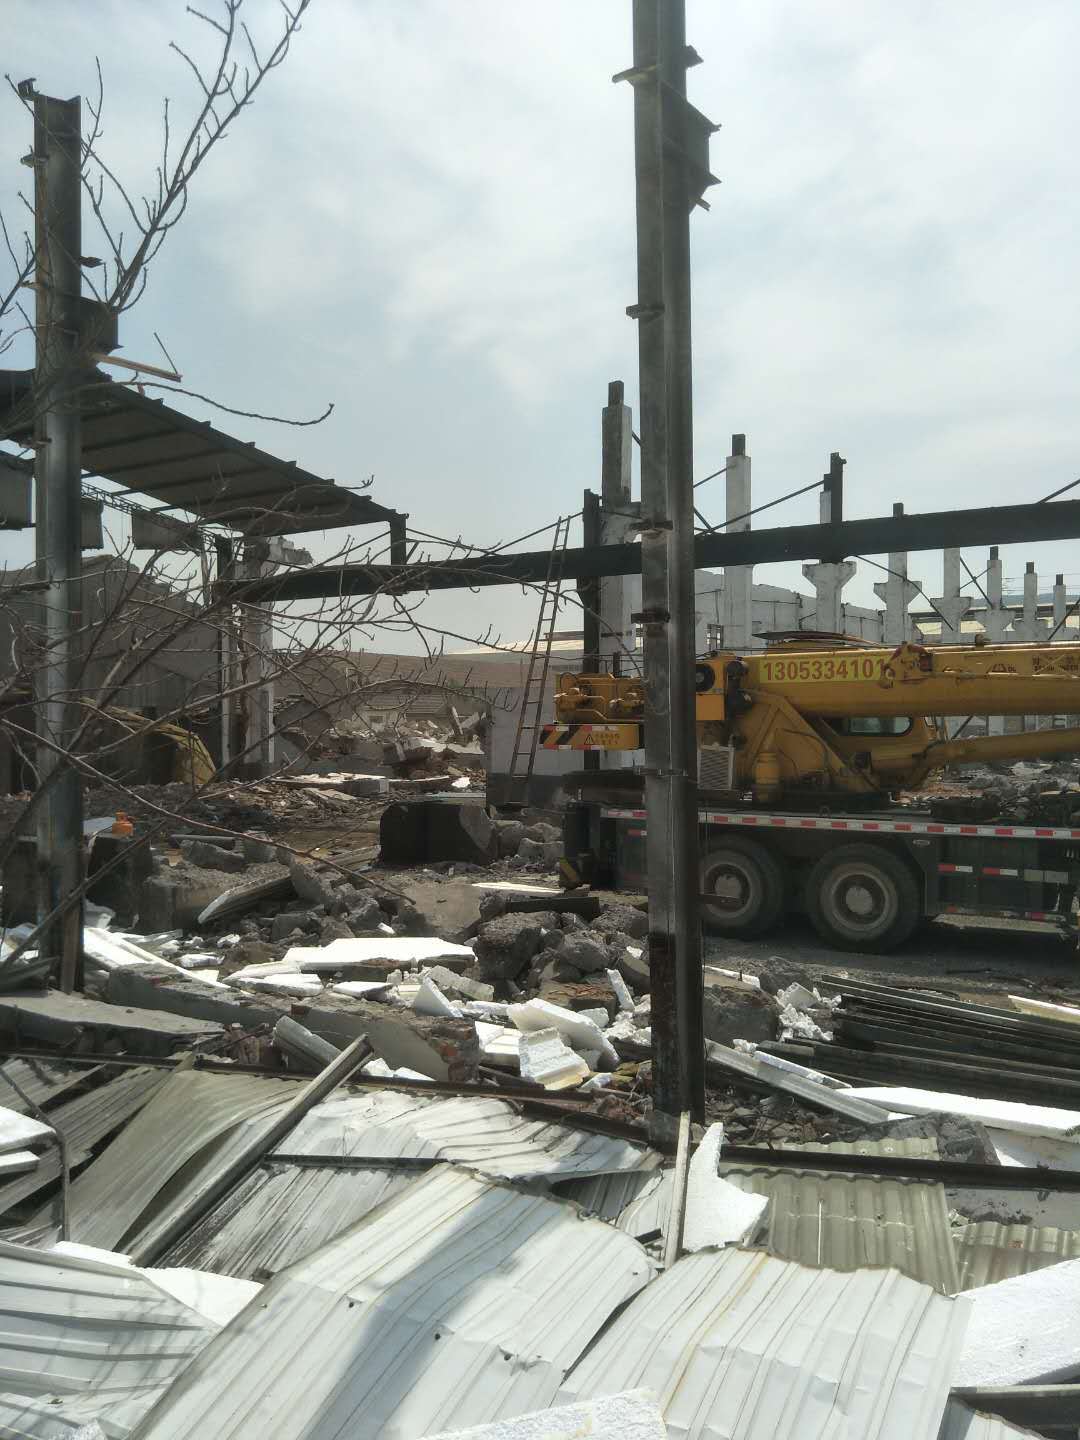 十大拆除公司:北京办公场所拆除 商场拆除 办公室拆除,隔断墙拆除